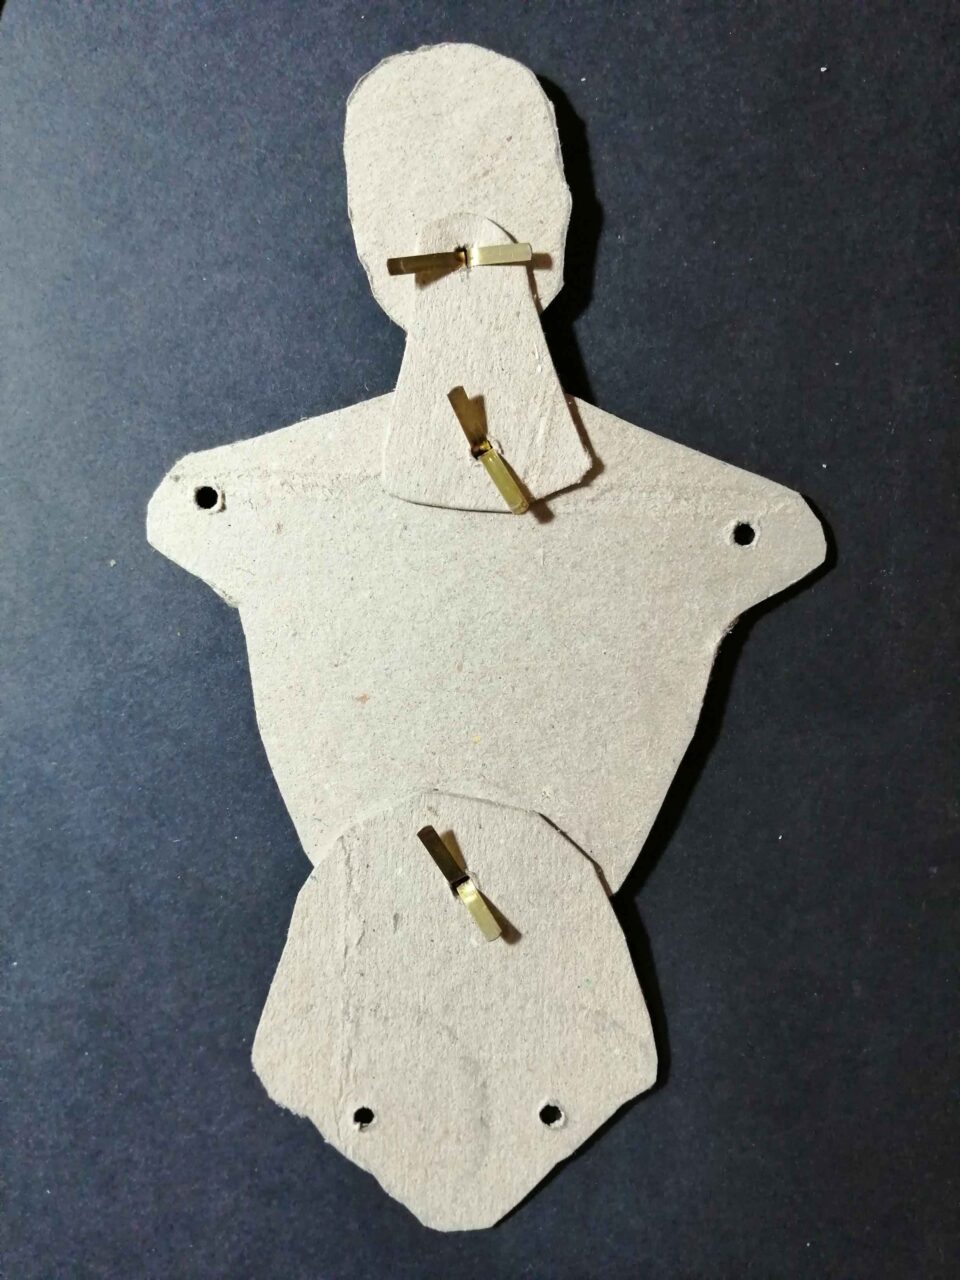 componenti del manichino assemblati: testa busto, bacino